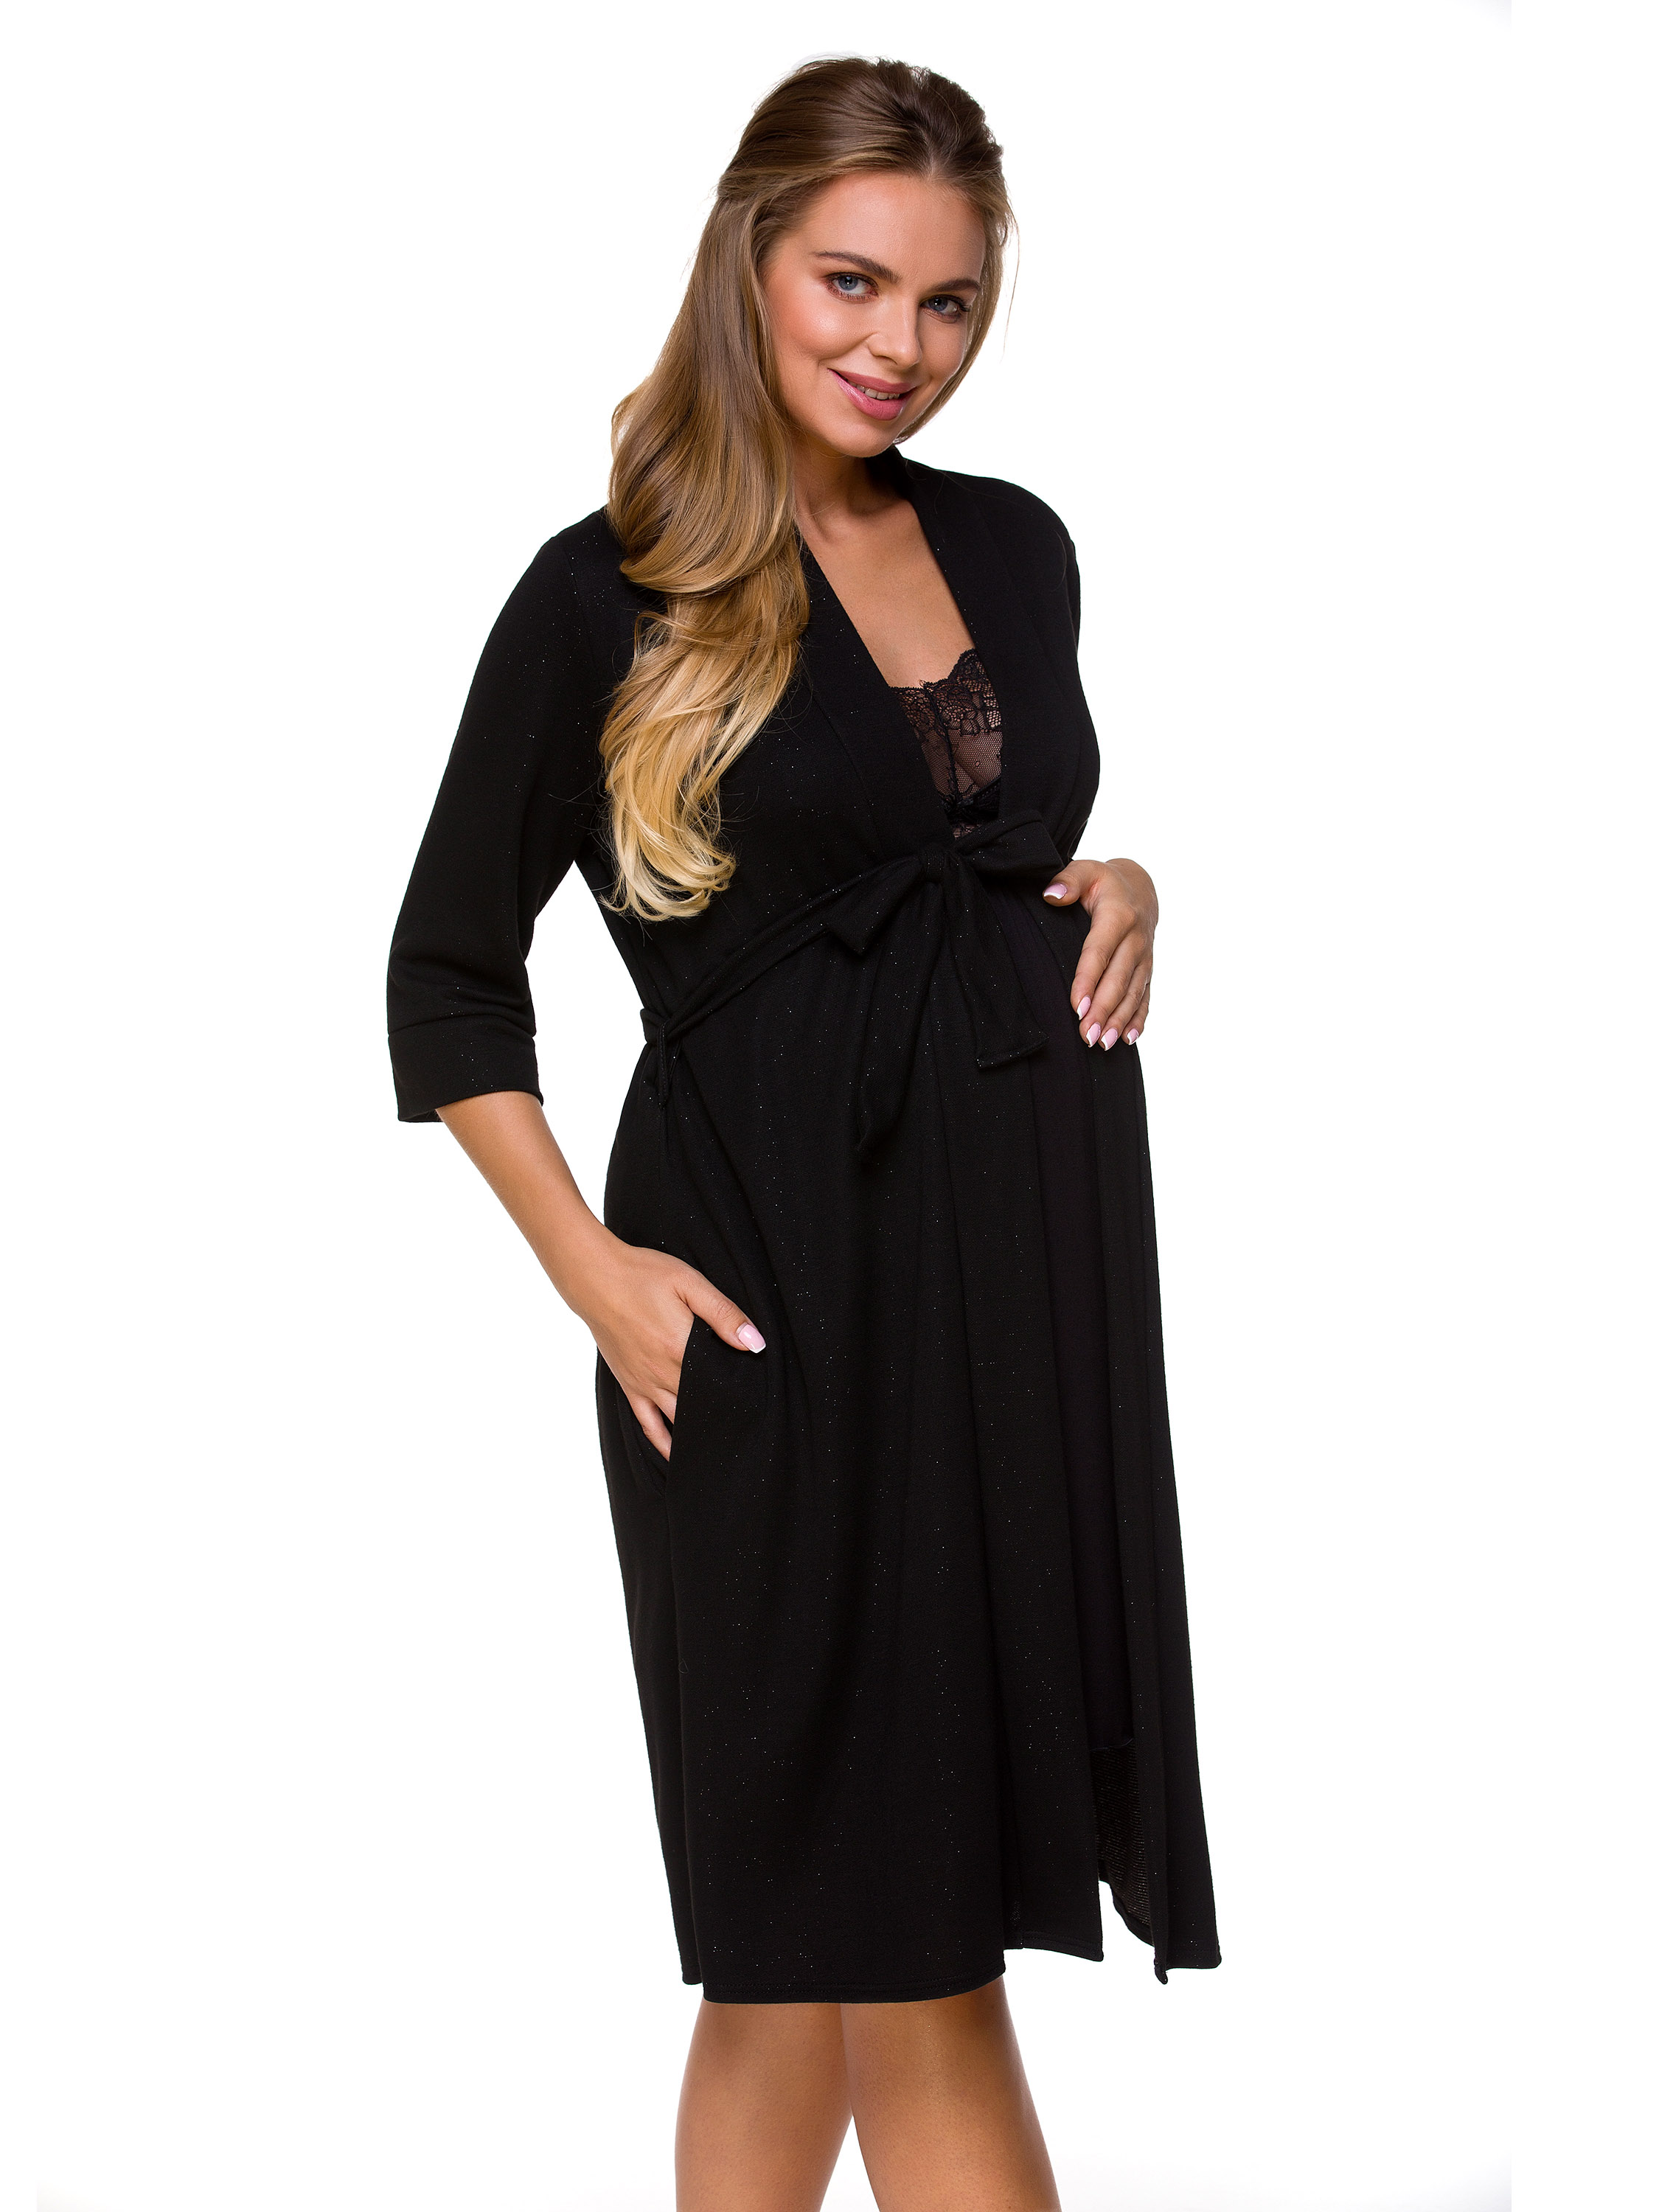 Women's elegant dressing gown for pregnant women Lupoline 3131 MK